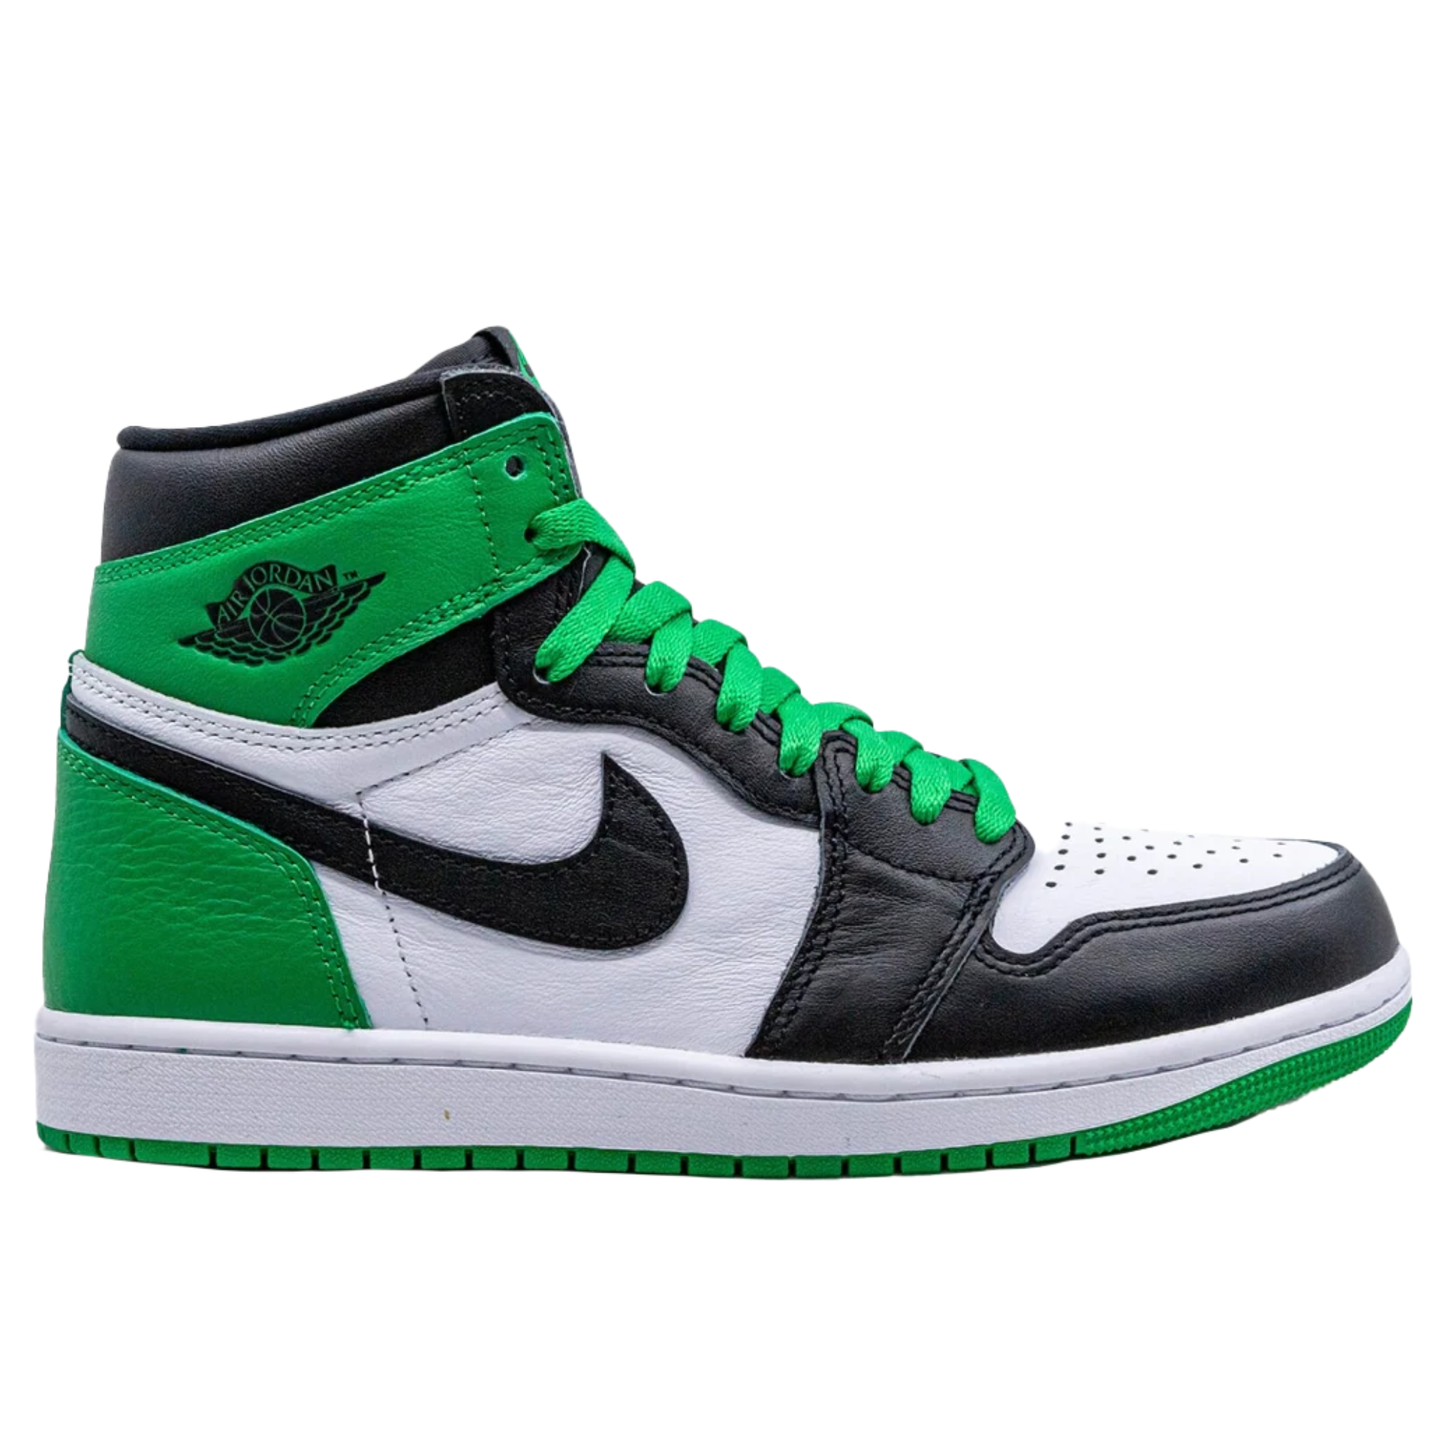 Air Jordan 1 retro high og black/lucky green